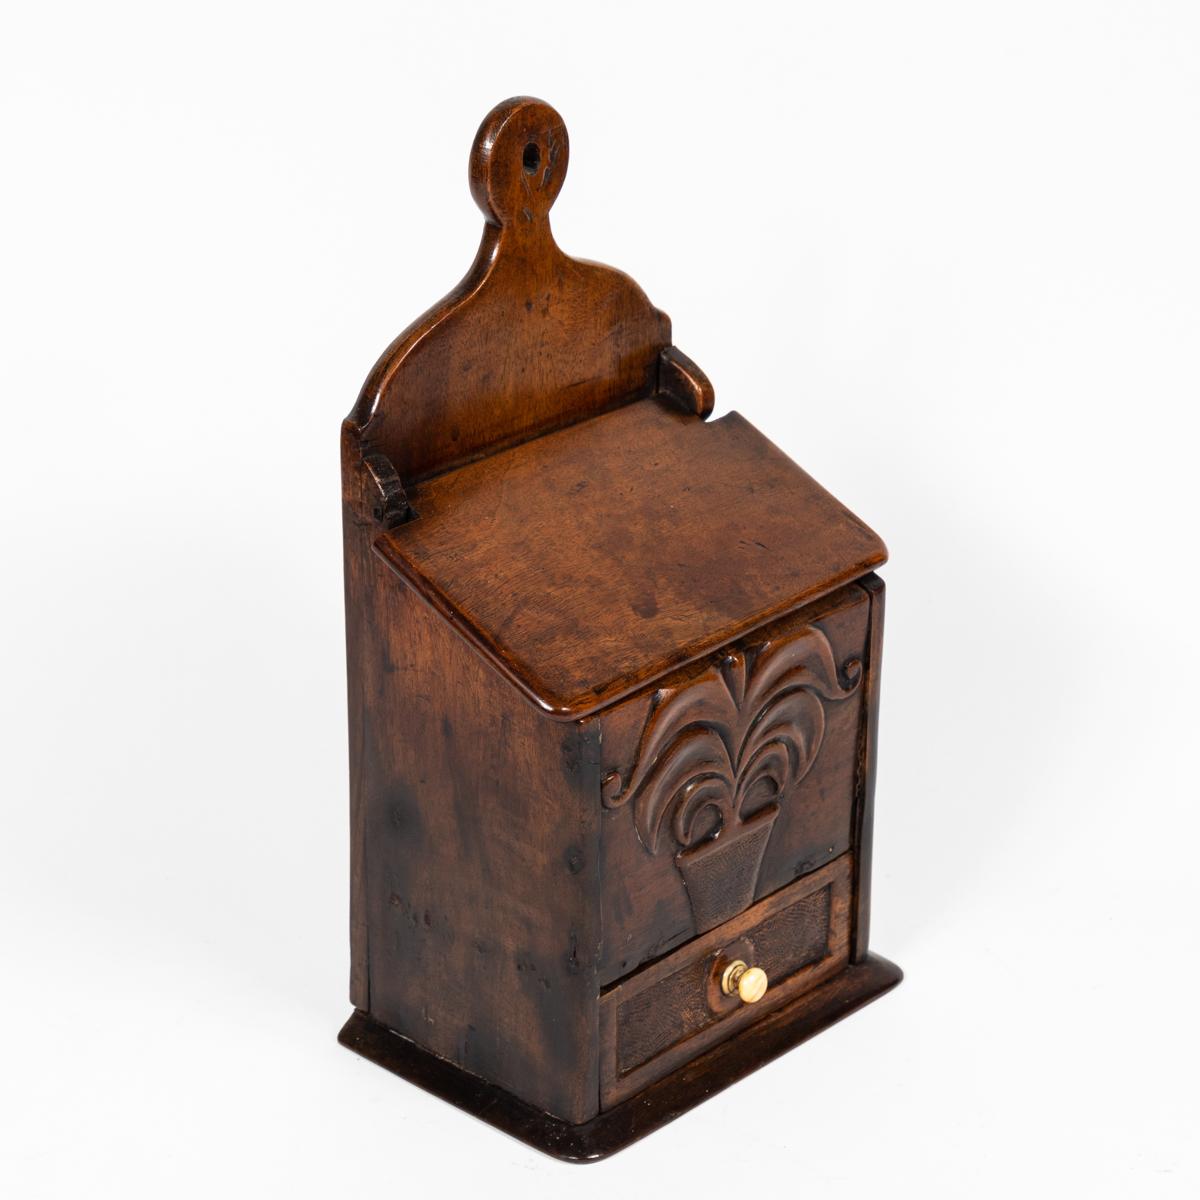 Boîte à épices en bois fruitier de la fin du XVIIIe siècle en Angleterre. Cette boîte comporte un petit tiroir et une sculpture figurative d'une plante sur sa face avant. 